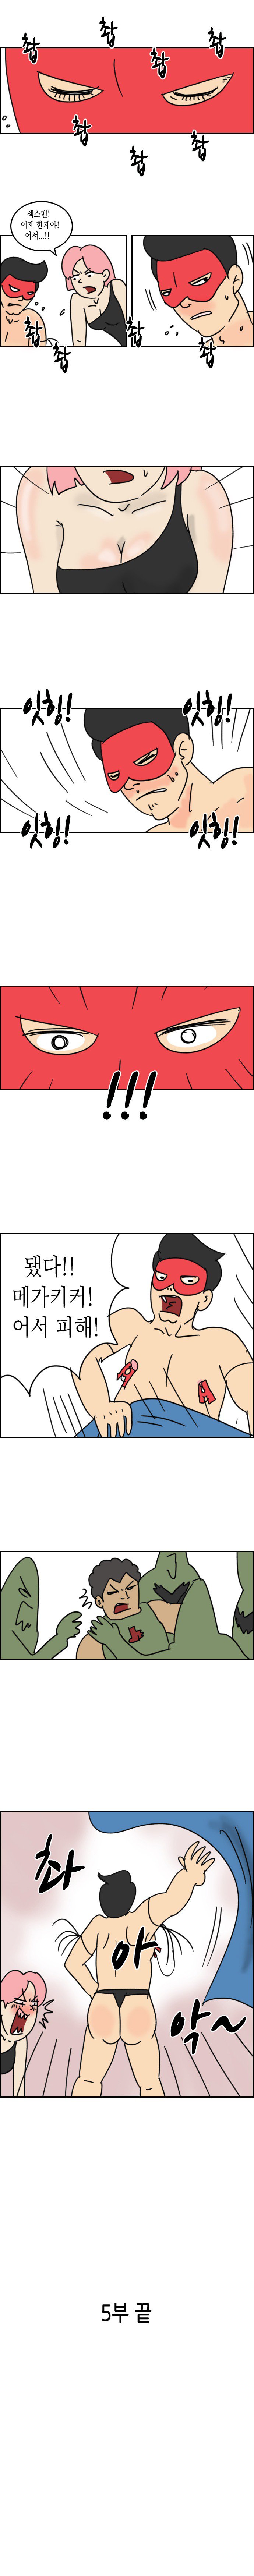 만화) 섹스맨 5부